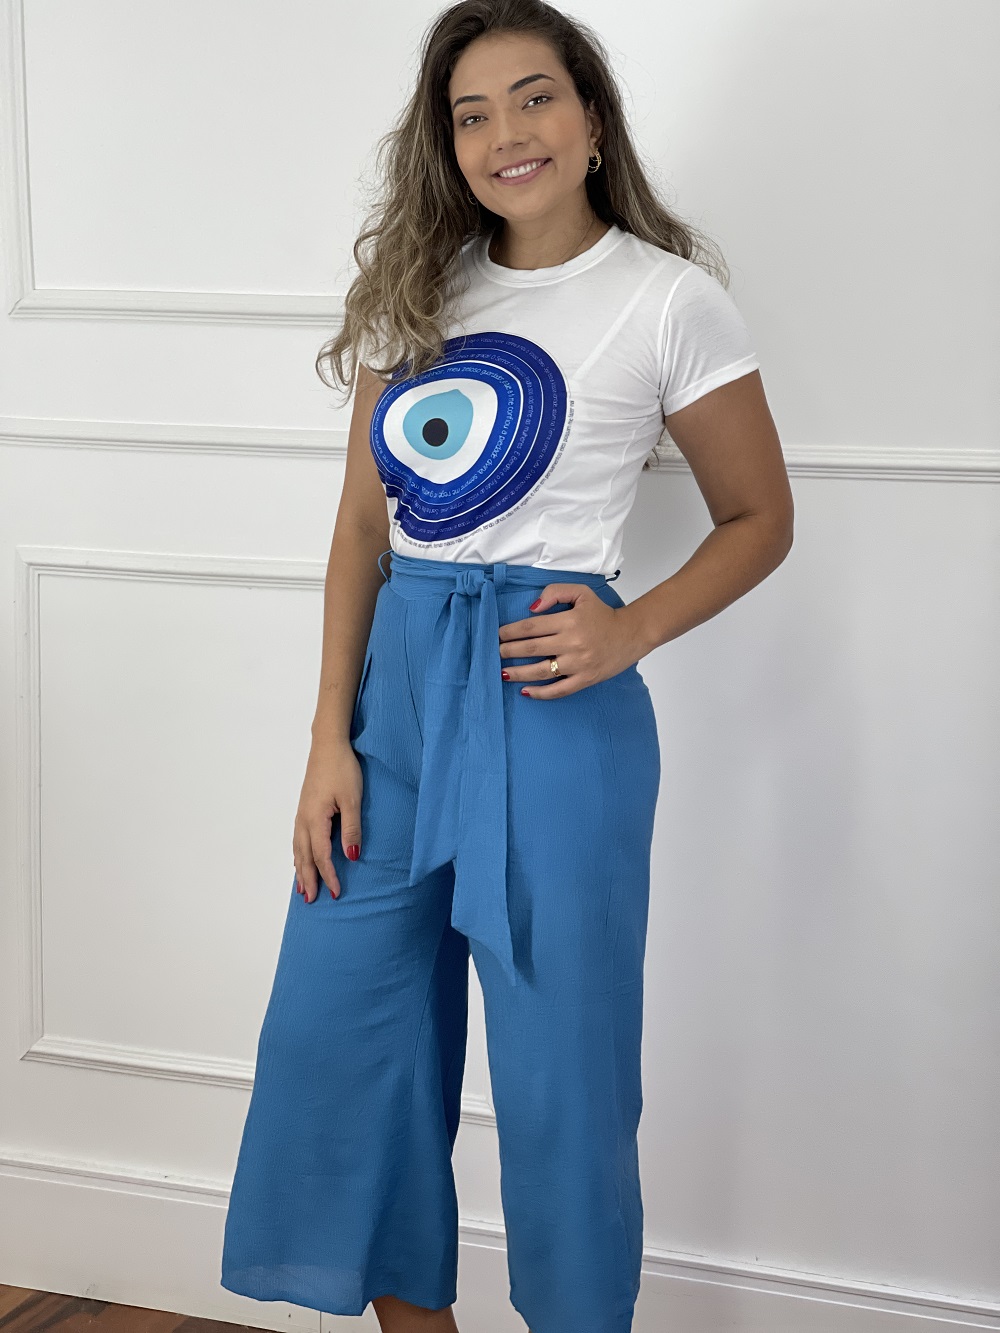 Look Pronto: Blusa T-shirt Estampa Frase Olho Grego + Calça Pantacourt Texturas Azul